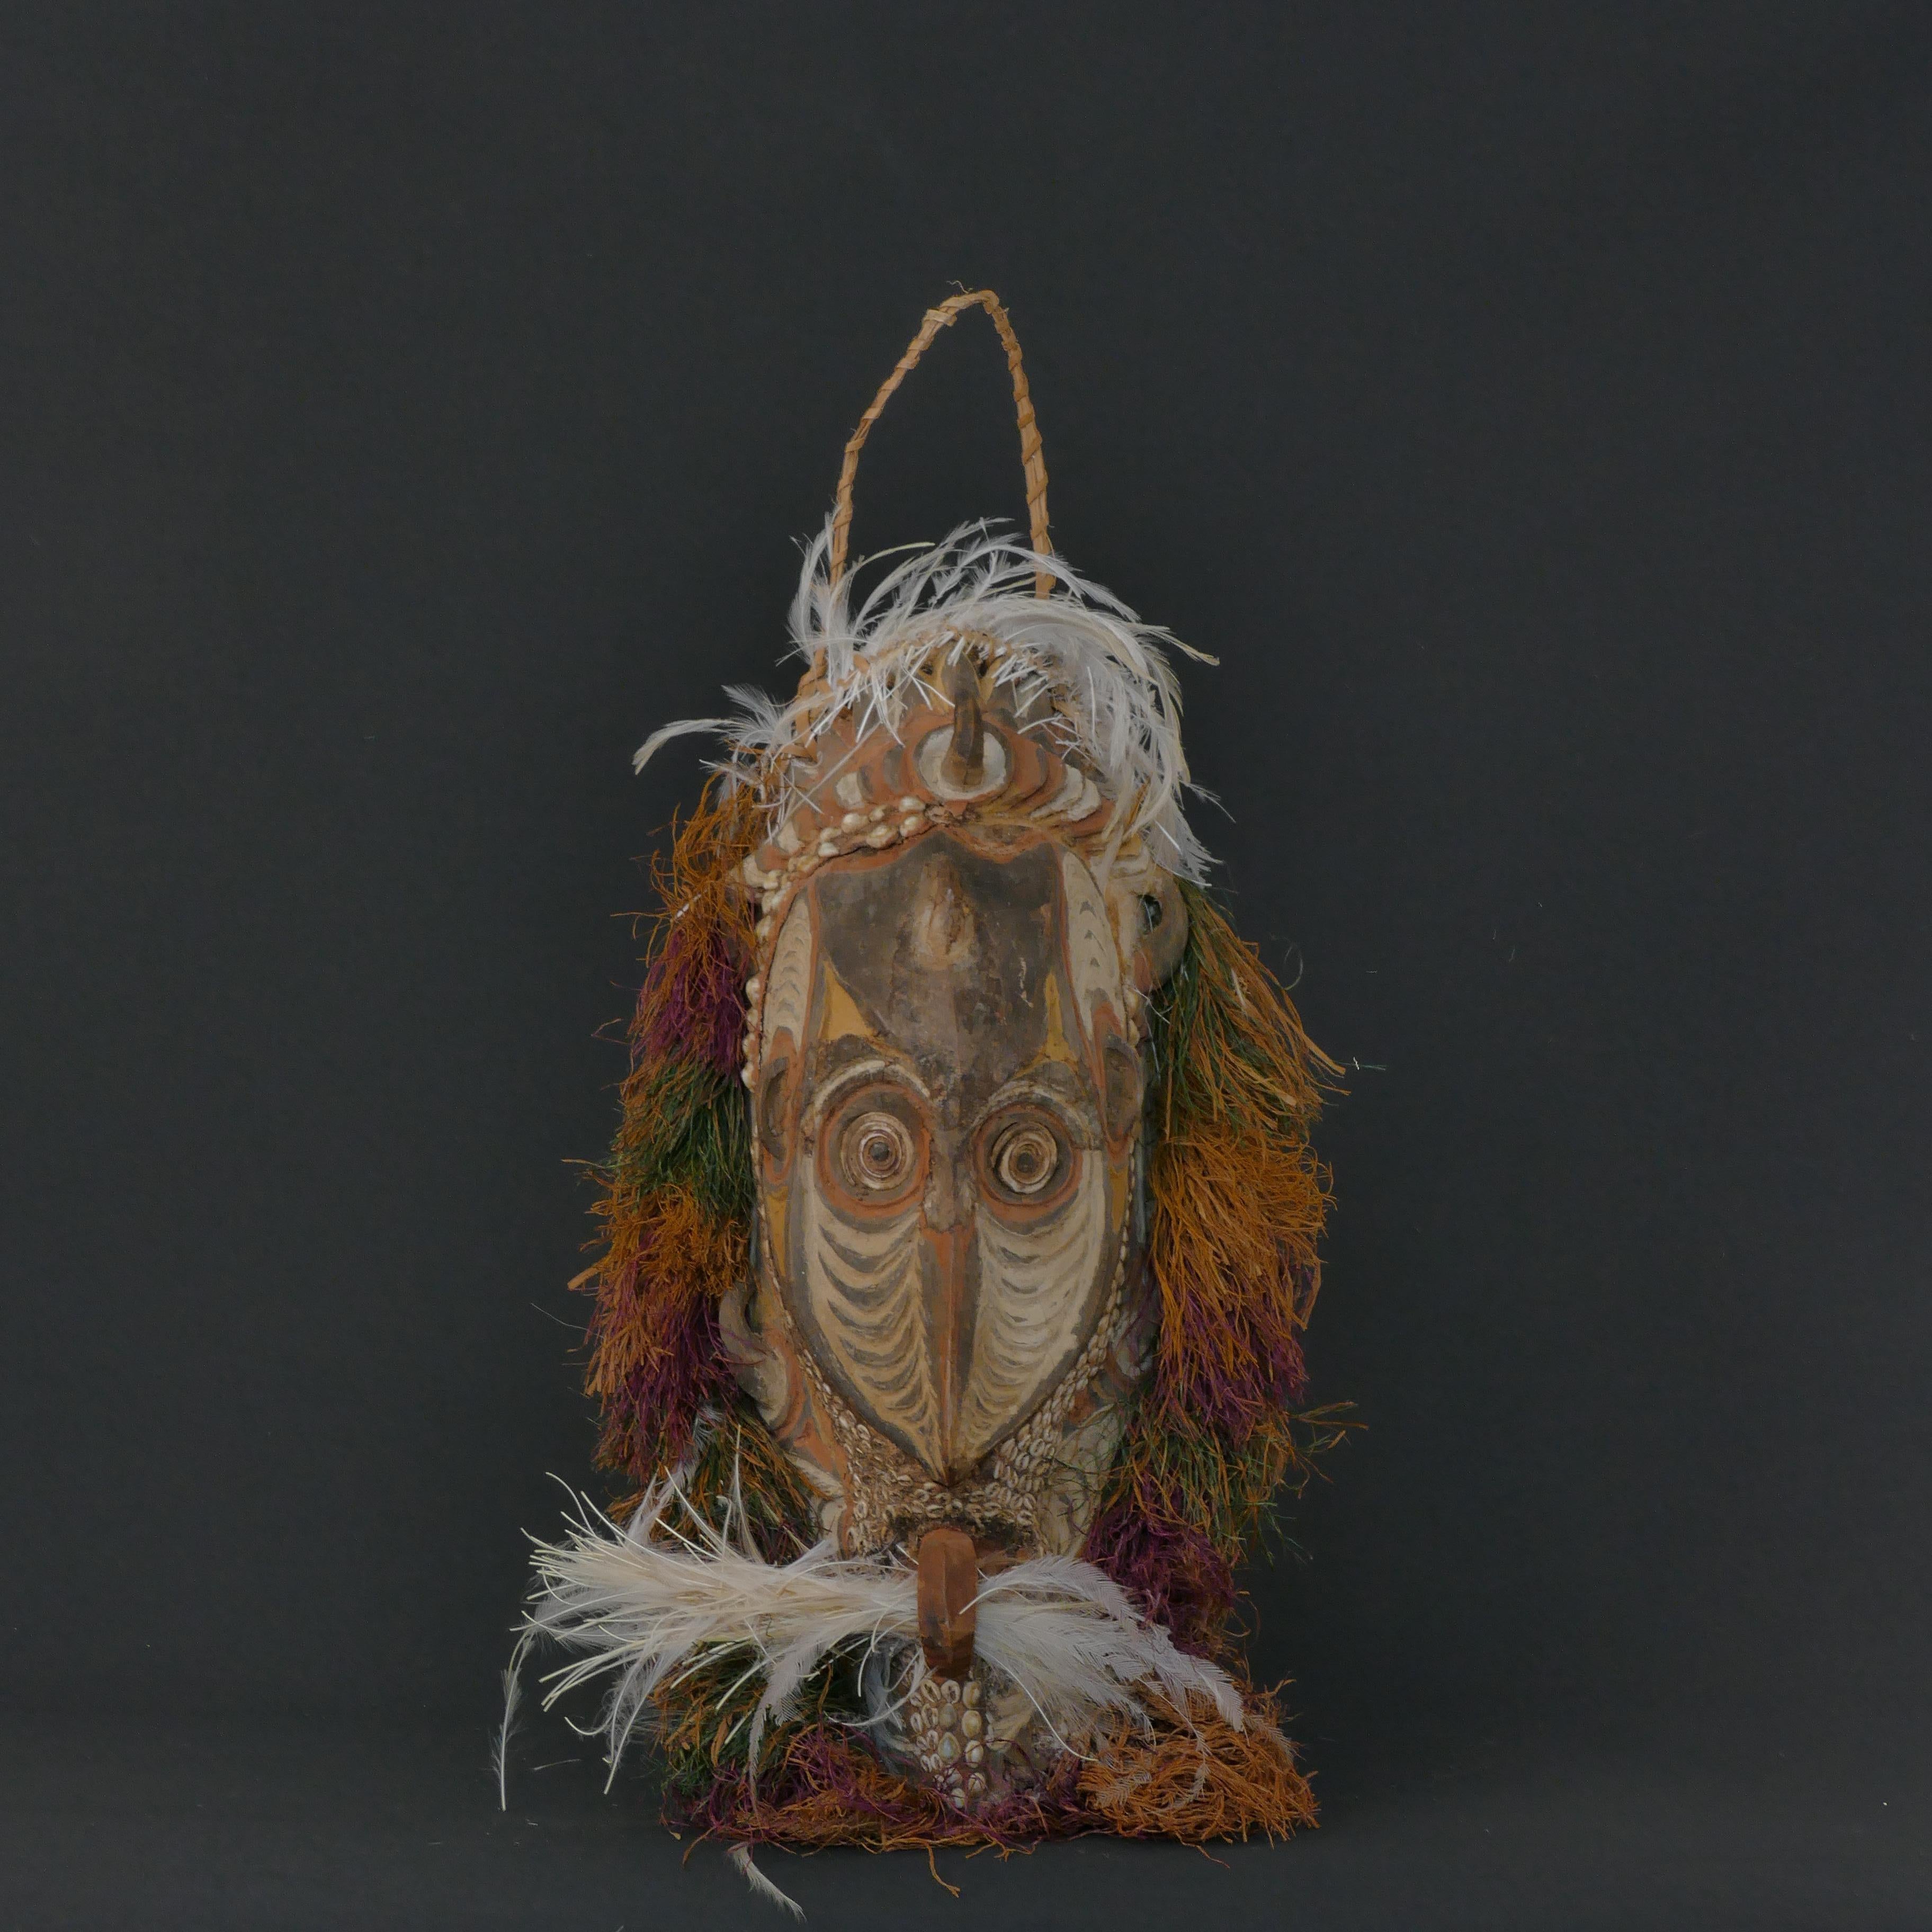 Magnifique et unique masque de cérémonie de la région du fleuve Sepik, en Papouasie-Nouvelle-Guinée, fait de bois, de cauris, de plumes, d'argile, de pigments et d'herbe.  

Ramené en Suède par un collectionneur dans les années 1960. De petites